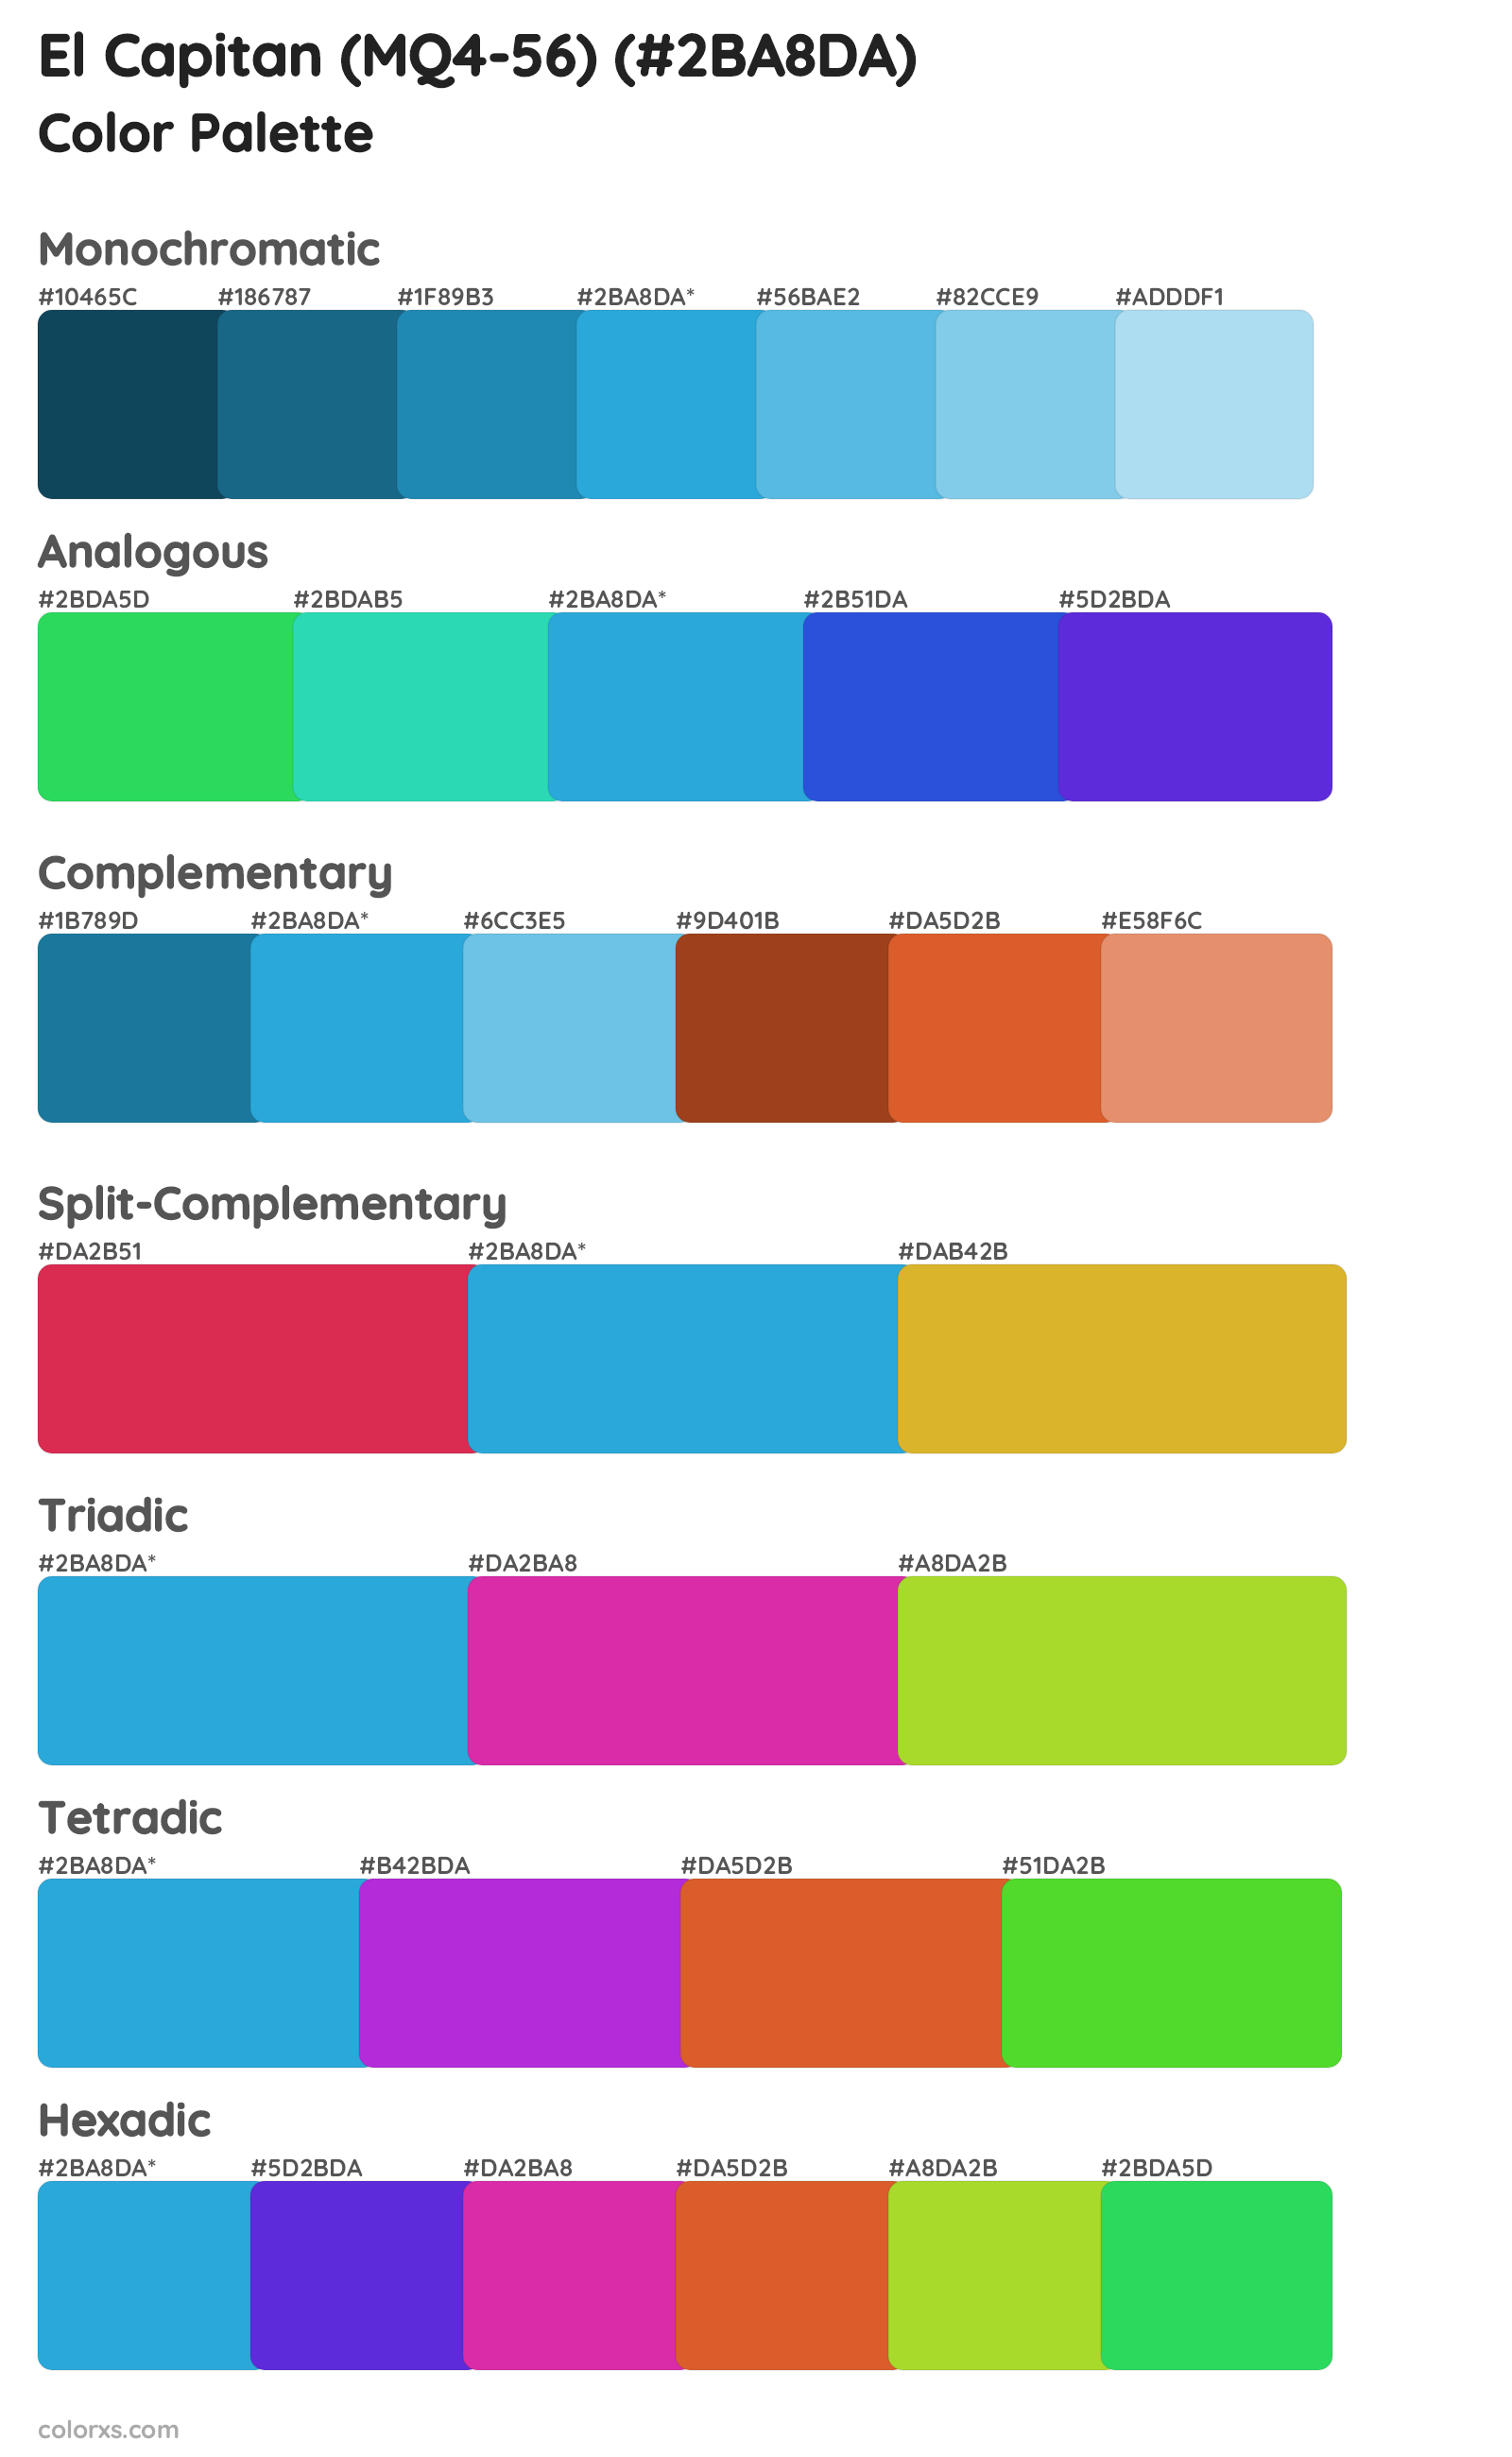 El Capitan (MQ4-56) Color Scheme Palettes